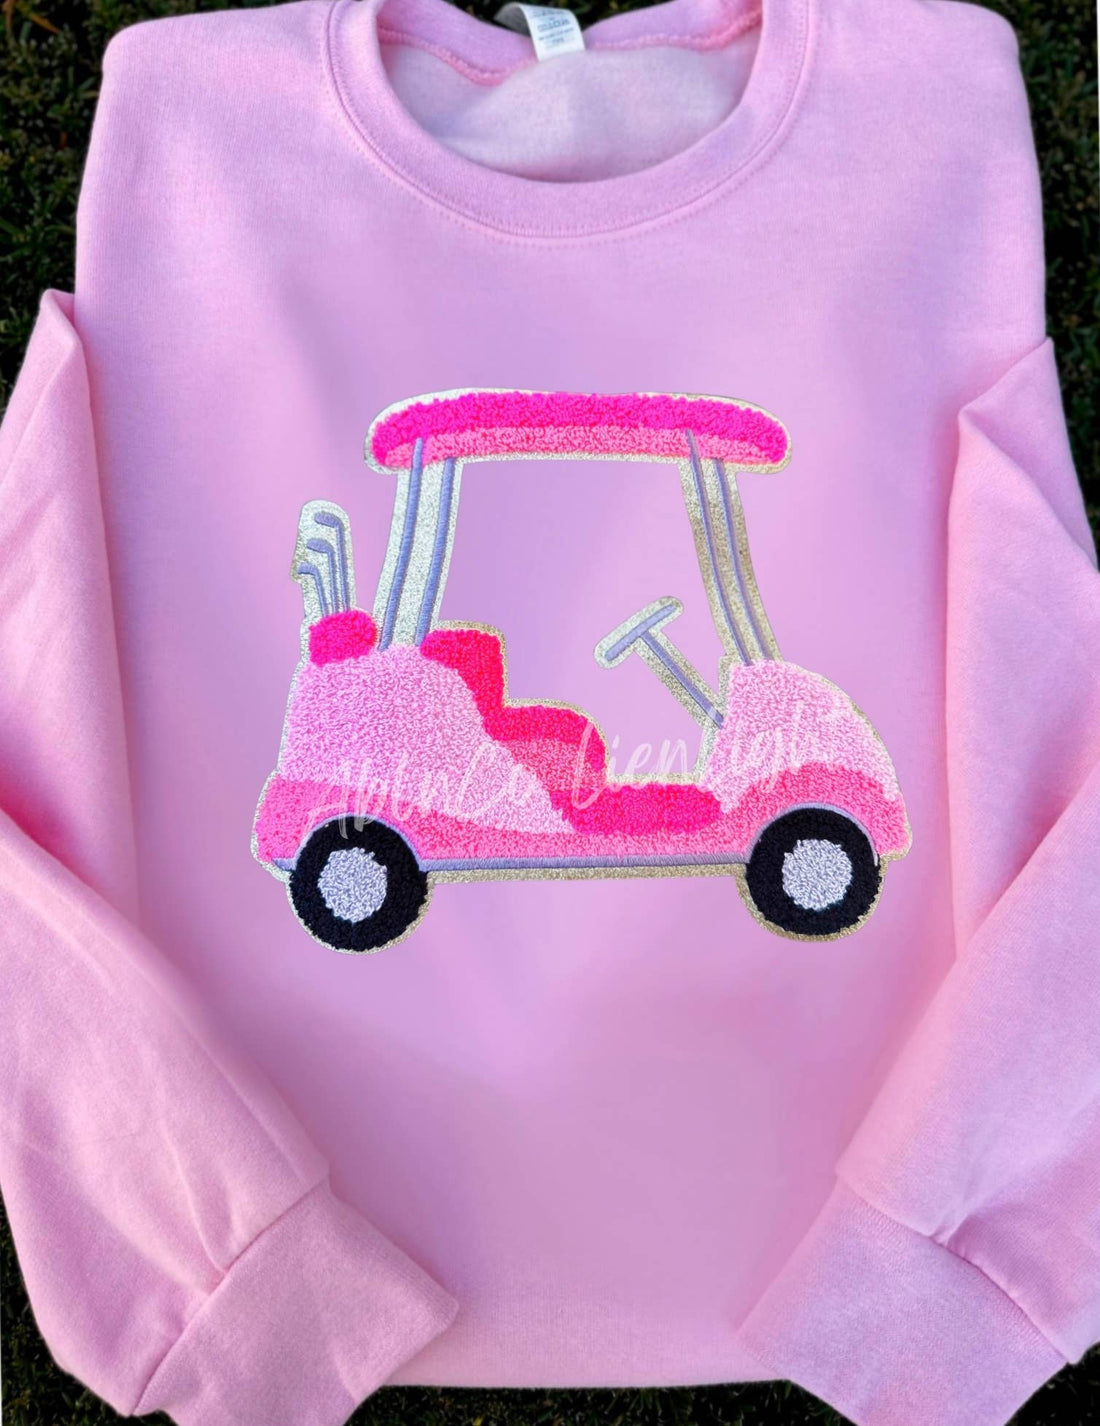 Pink Golf Cart Patch